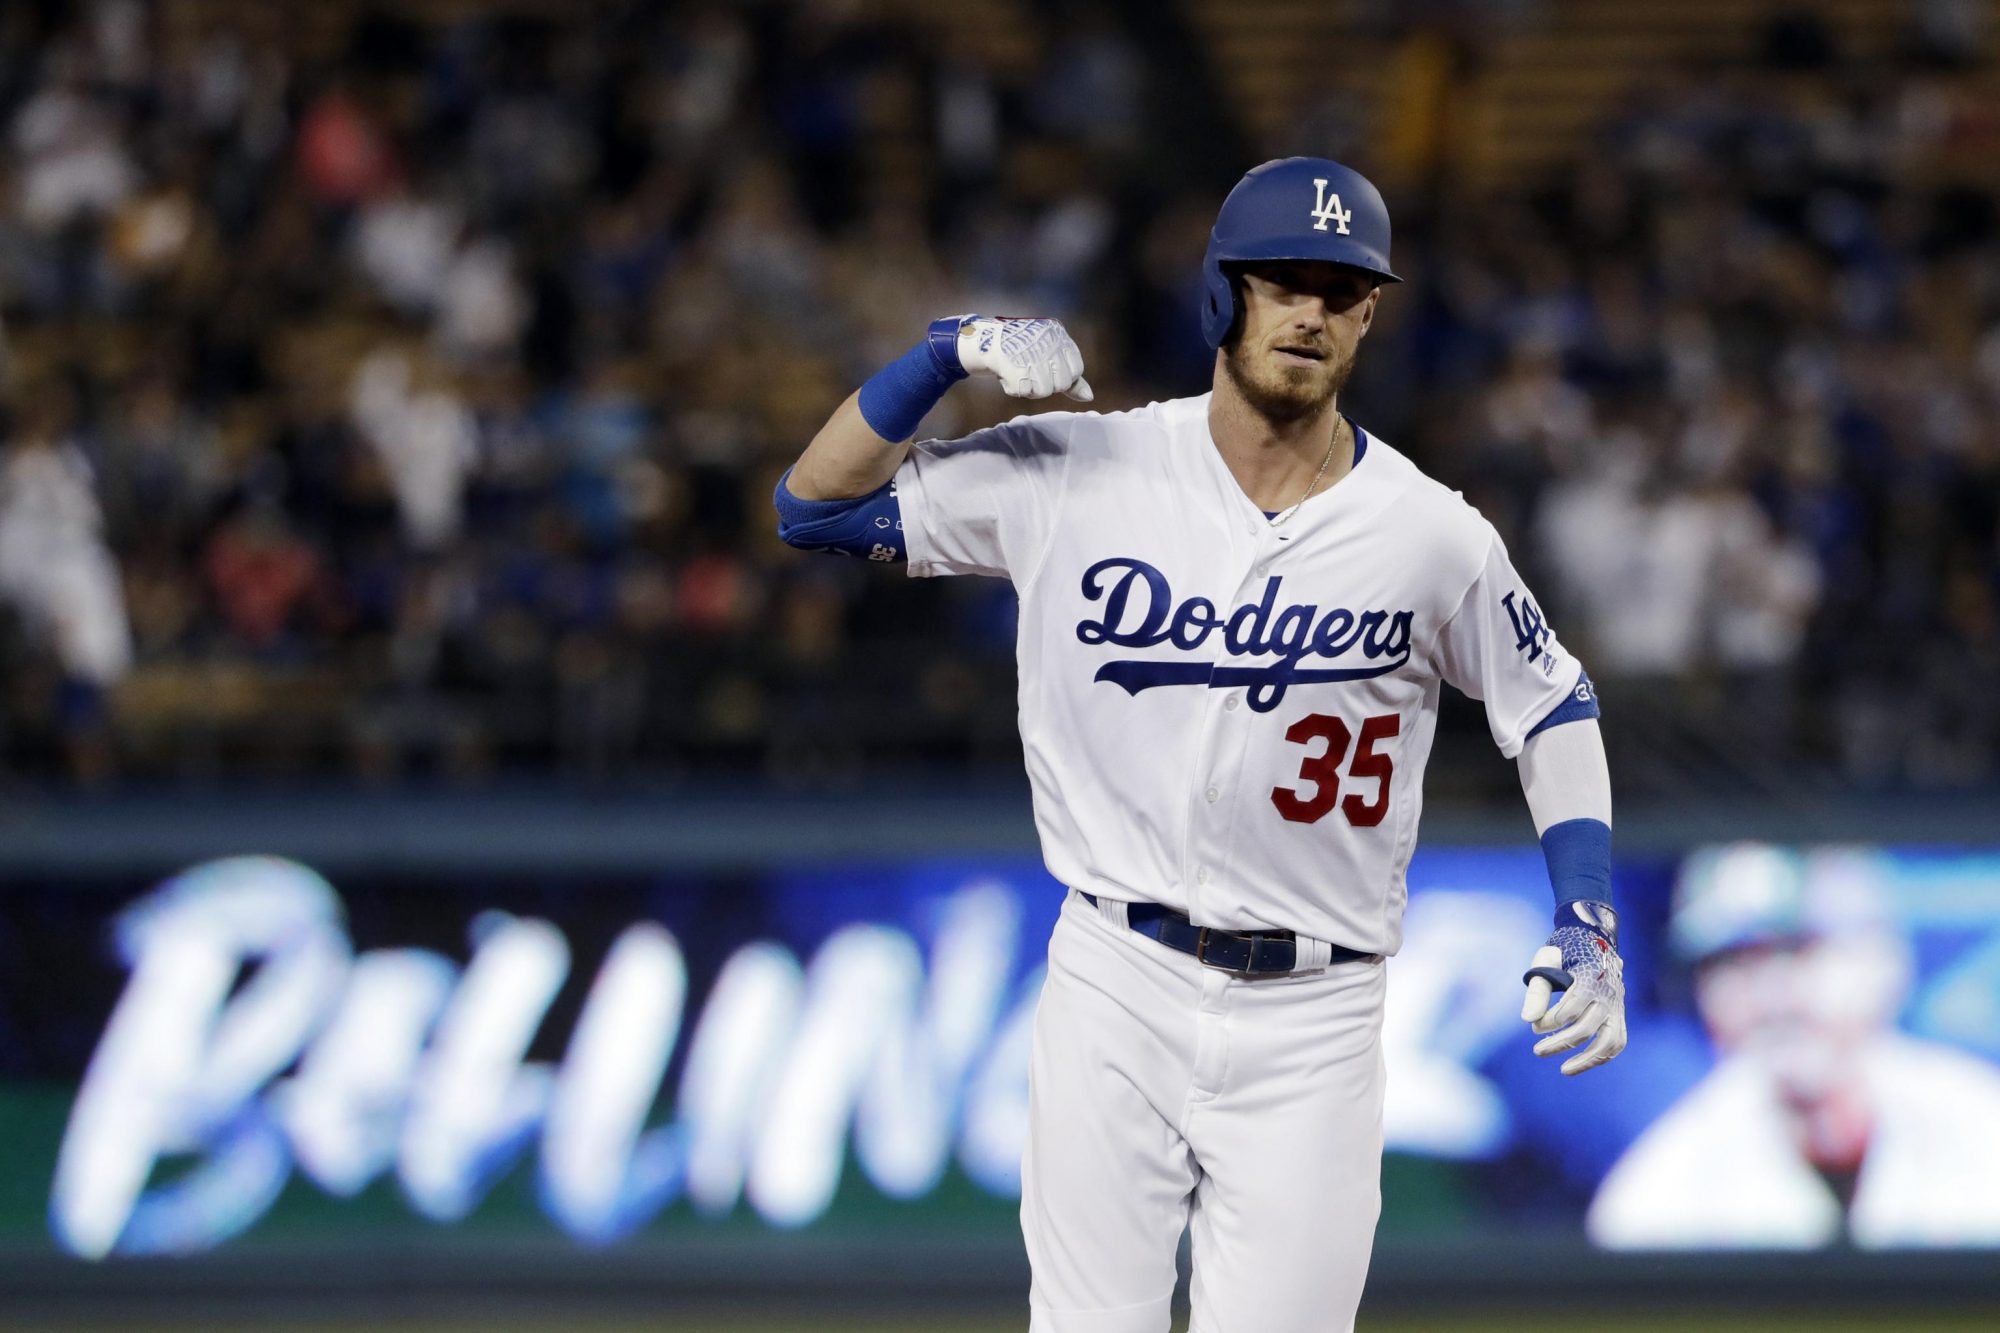 Dodgers' Cody Bellinger's hot start is no fluke, he's the best player